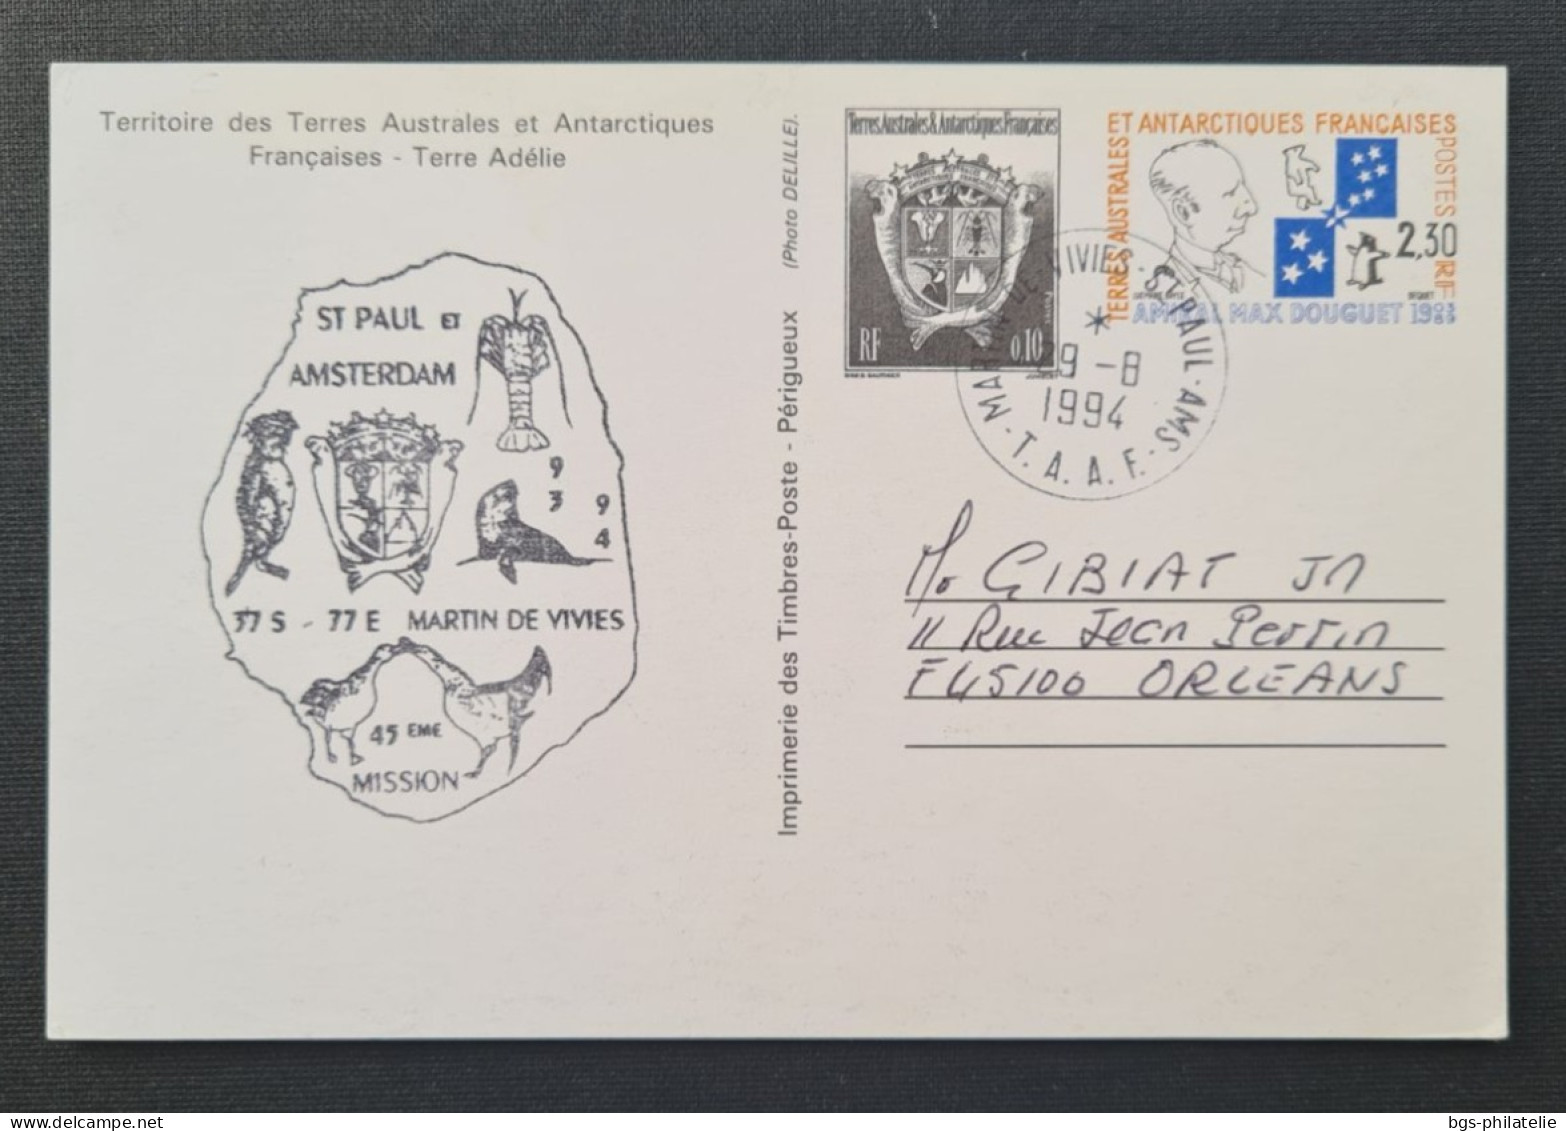 TAAF, Entier Postal N°2 Oblitéré De ST PAUL Le 29/8/1994. - Brieven En Documenten